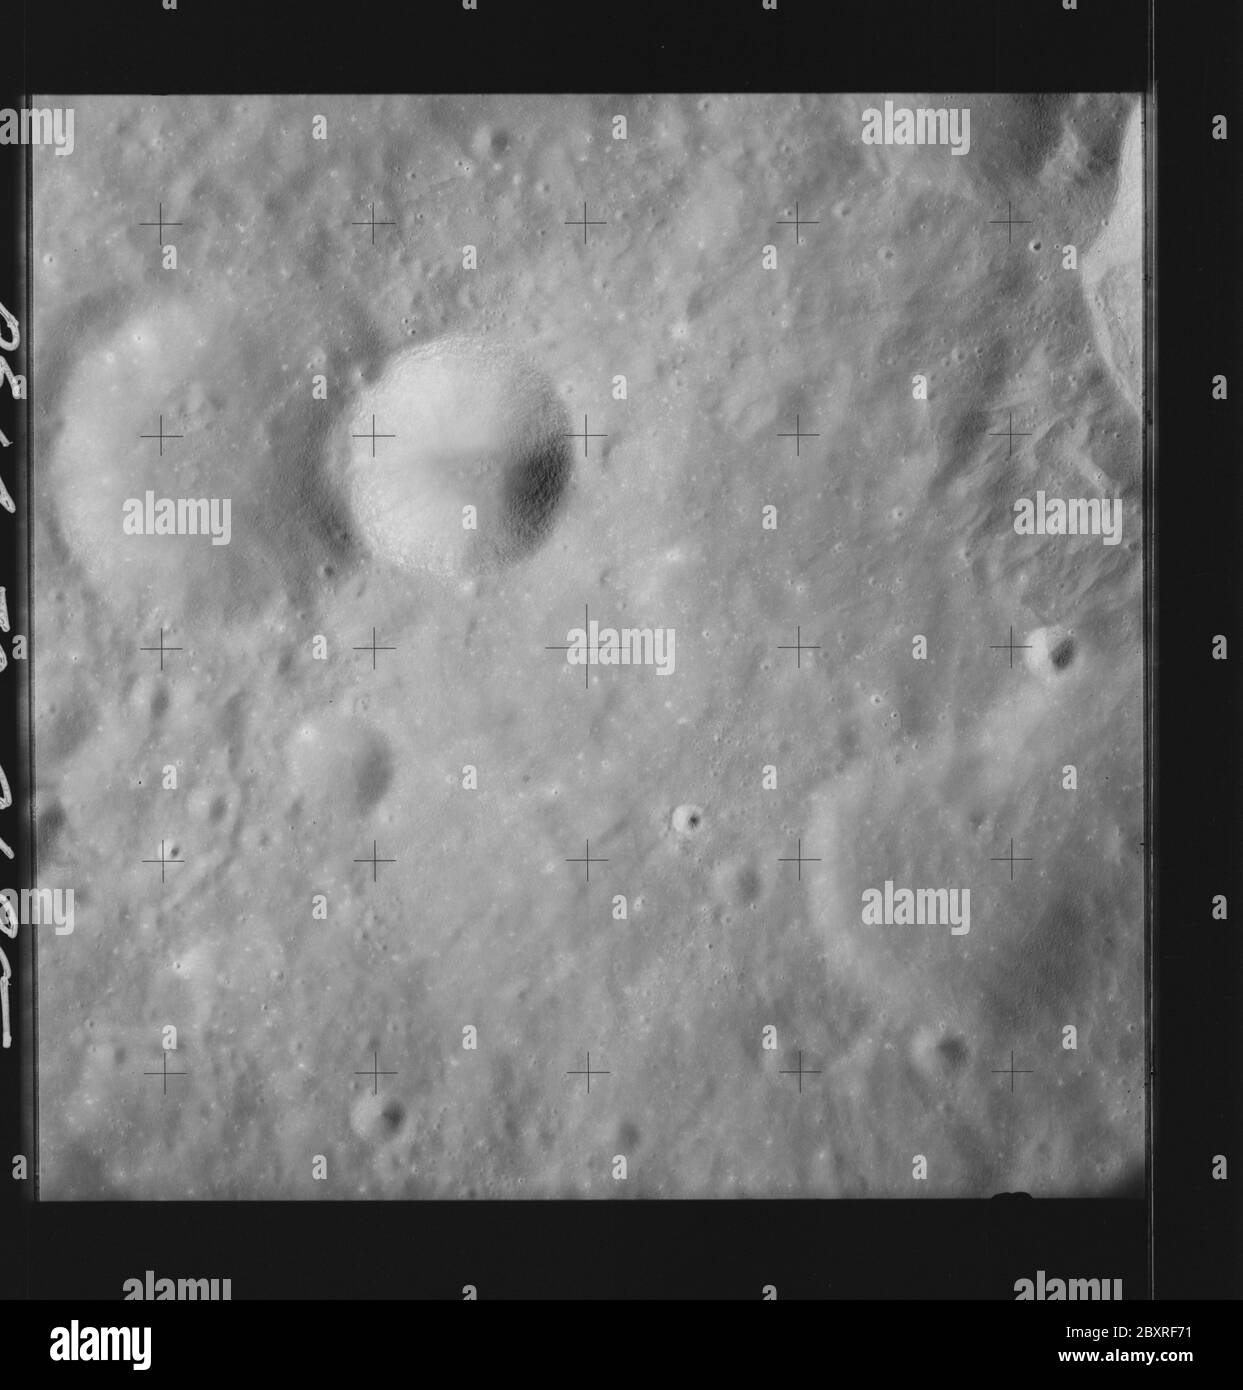 AS14-70-9685 - Apollo 14 - immagine della missione Apollo 14 - Vista della superficie lunare a sud-est del cratere di Einthoven.; scopo e contenuto: Il database originale descrive questo come: Descrizione: Vista della superficie lunare a sud-est del cratere di Einthoven. Sono state scattate immagini sulla Rivoluzione 26 della missione Apollo 14. Il caricatore di pellicola originale era etichettato Q, il tipo di pellicola era 3400BW (Panatomic-X, Nero e Bianco), lente da 80 mm con un'elevazione del sole di 30 gradi. La scala approssimativa della foto è 1:1,380,000. Il punto principale della latitudine era 7.5S per Longitudine 111.0E, con un'inclinazione verticale della telecamera. Oggetto: Apollo 14 Fligh Foto Stock